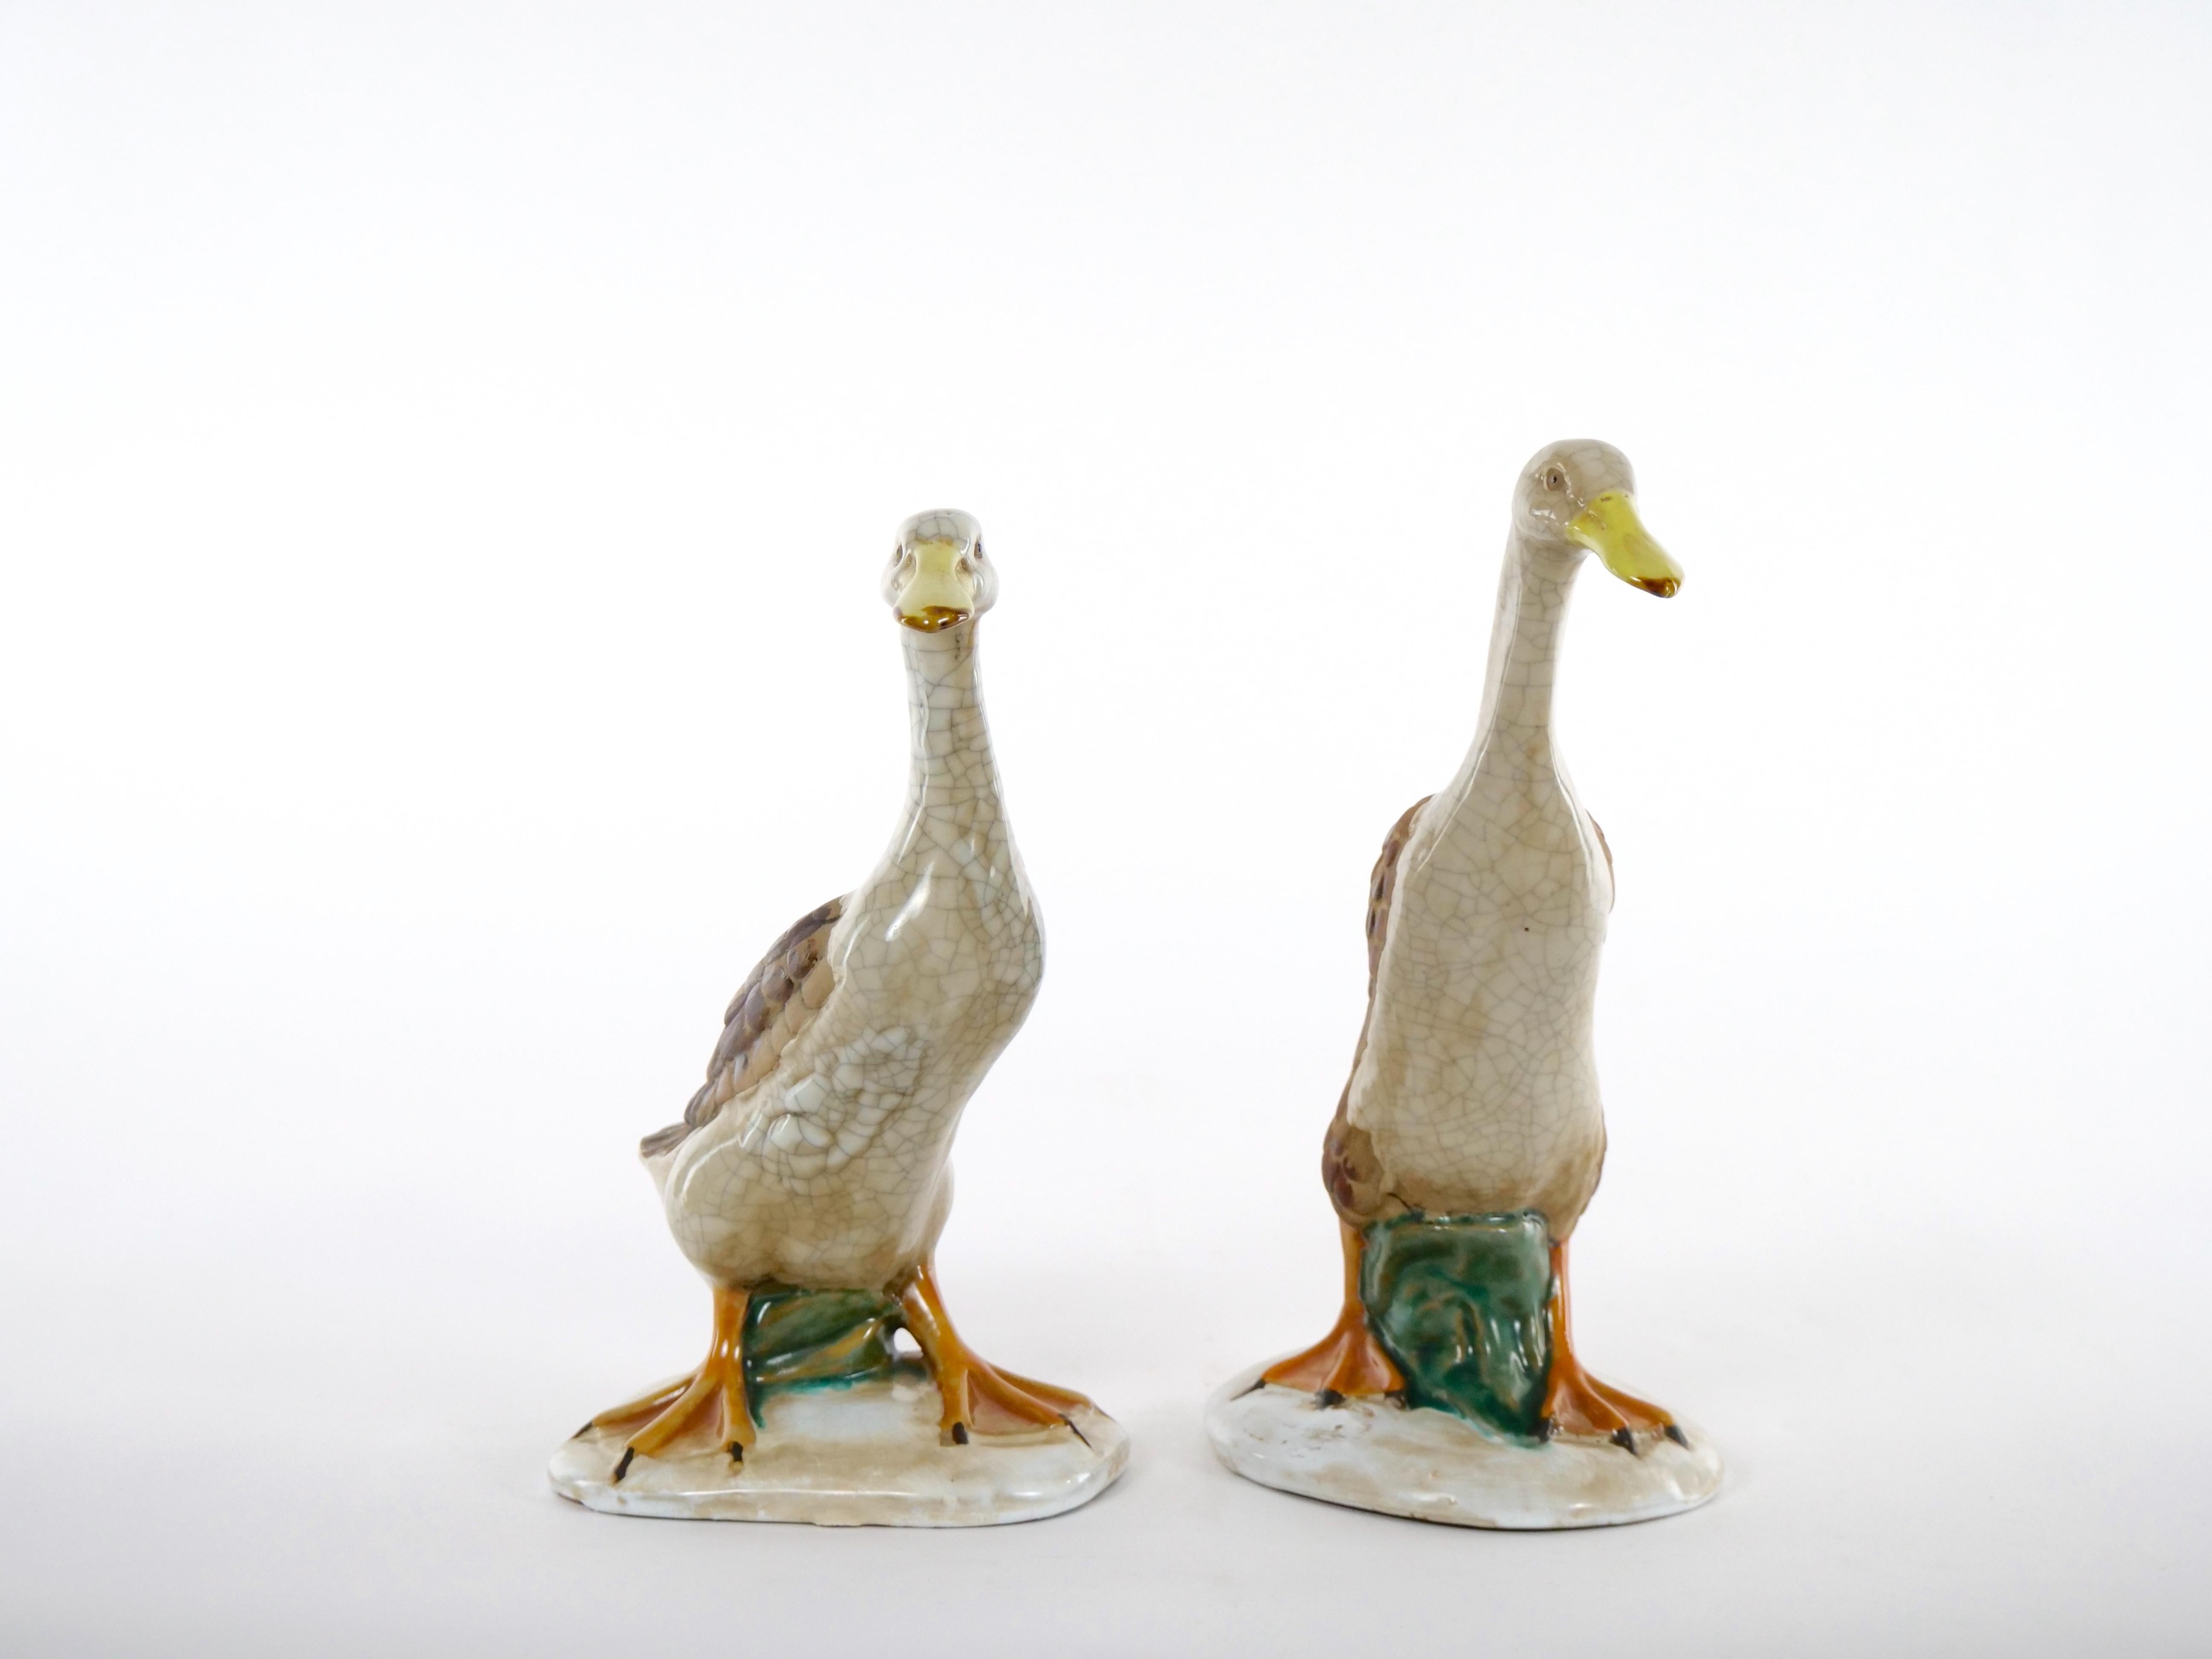 Magnifique paire de statues de canards décoratifs en porcelaine / terre cuite anglaise peinte et émaillée à la main. Cette étonnante paire de canards décoratifs en porcelaine anglaise émaillée est exécutée dans des couleurs vibrantes d'orange, de